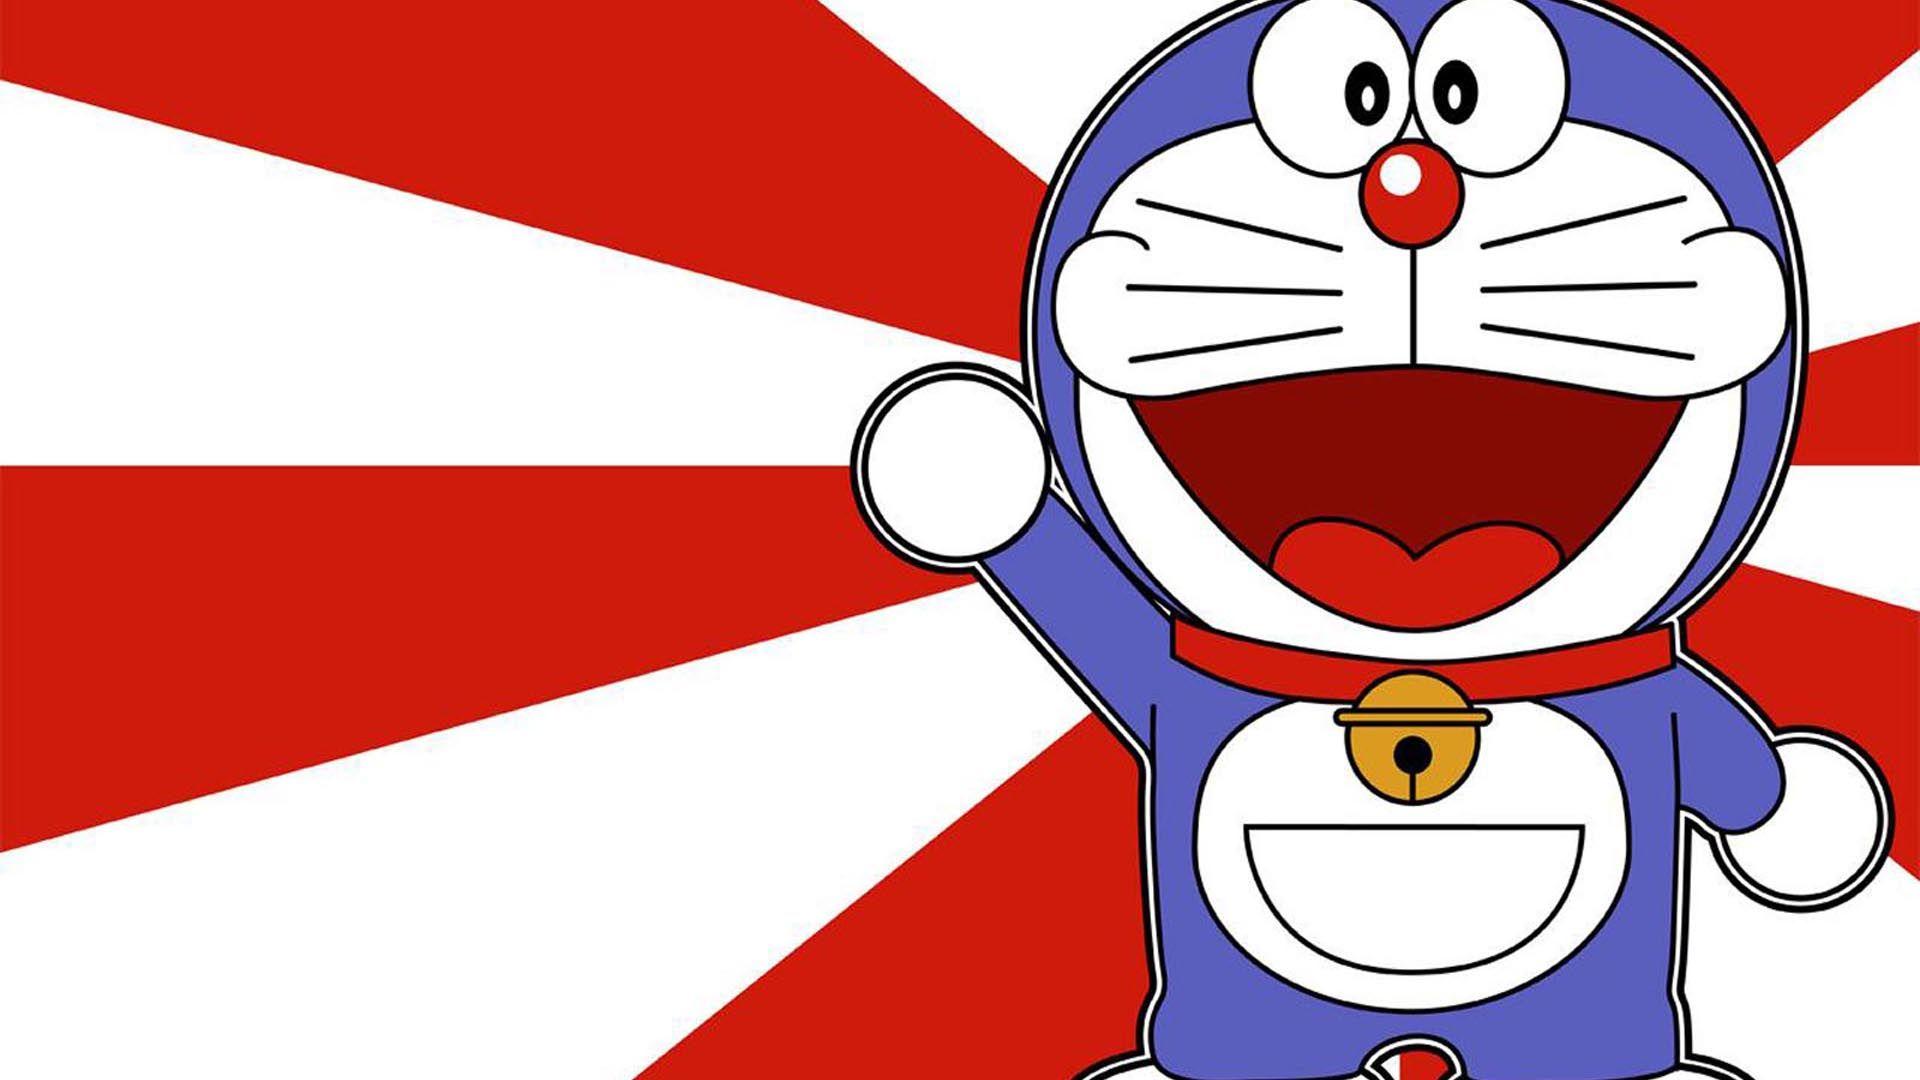 Doraemon wallpaper 2